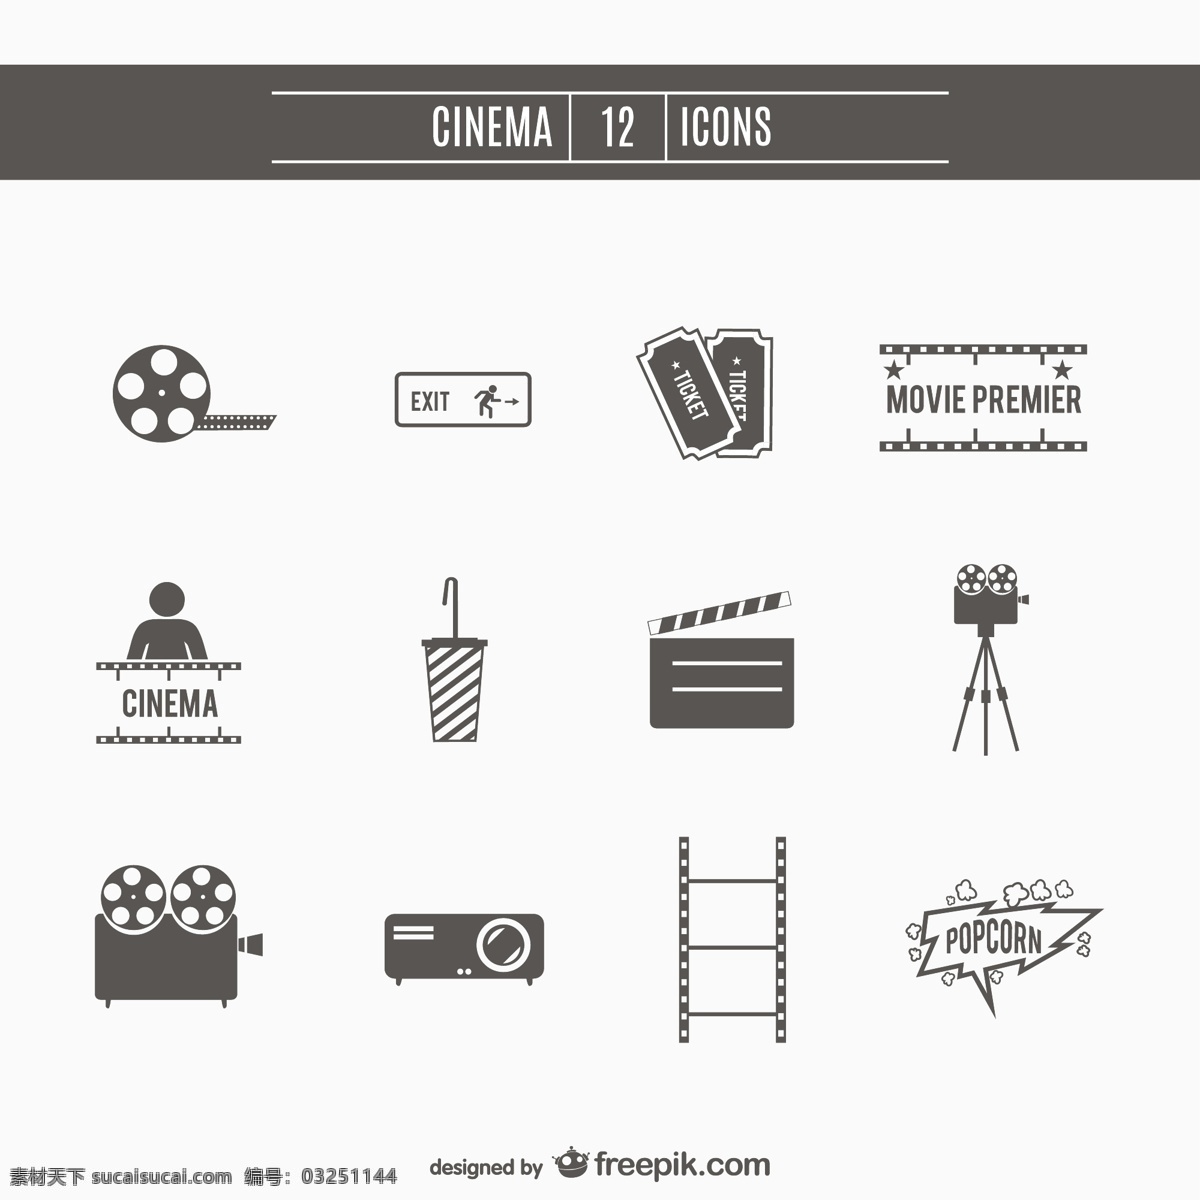 电影 影院 图标 集 年份 相机 复古 模板 票 艺术 图形 布局 平面设计 工业 元素 象形 爆米花 白色